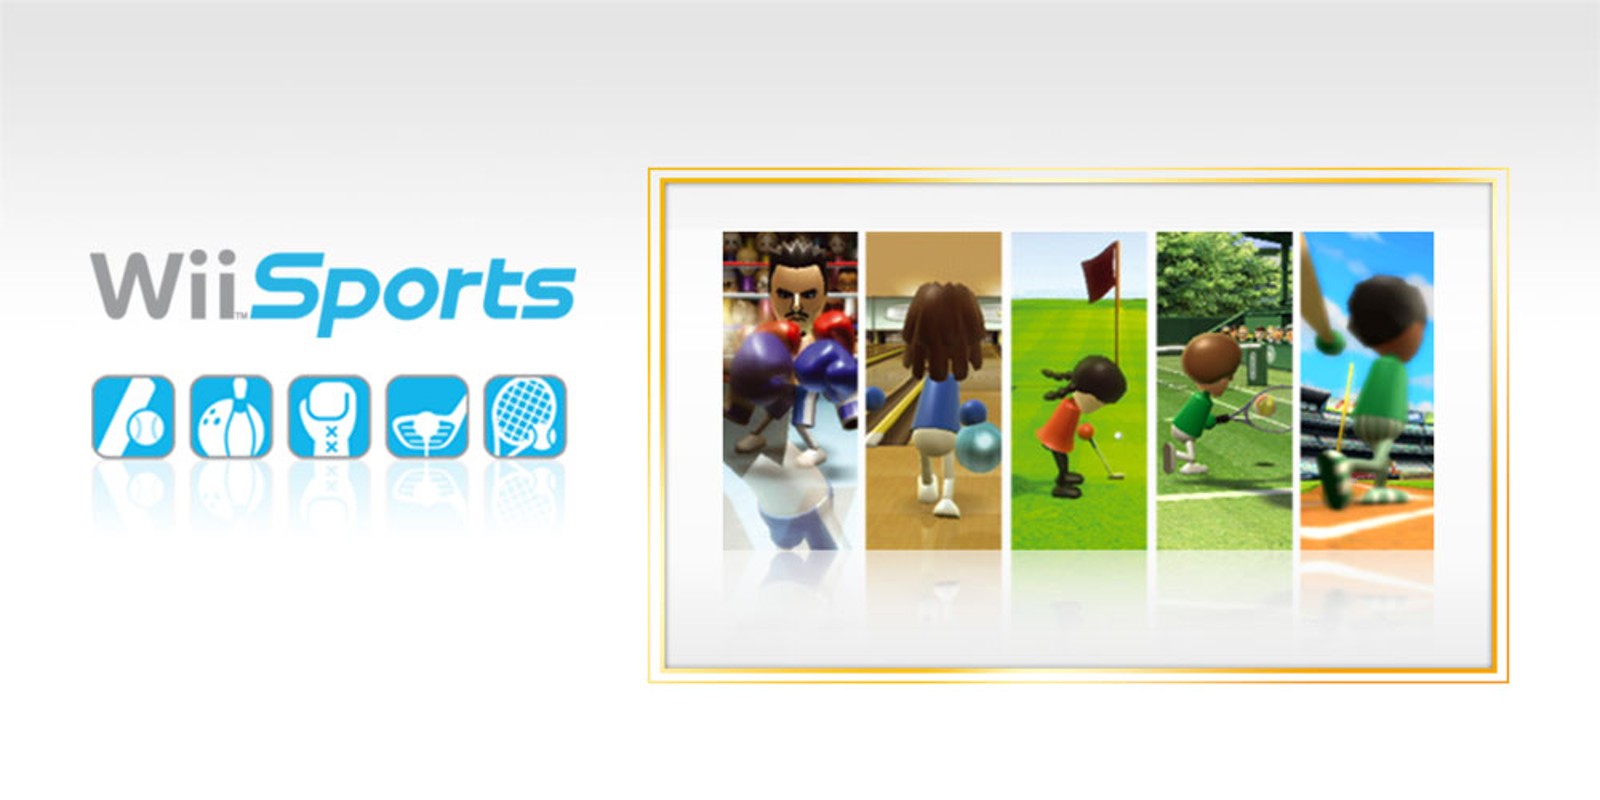 อดีตประธาน Nintendo เผย Wii Sports เกือบไม่ได้แถมมากับเครื่อง Wii